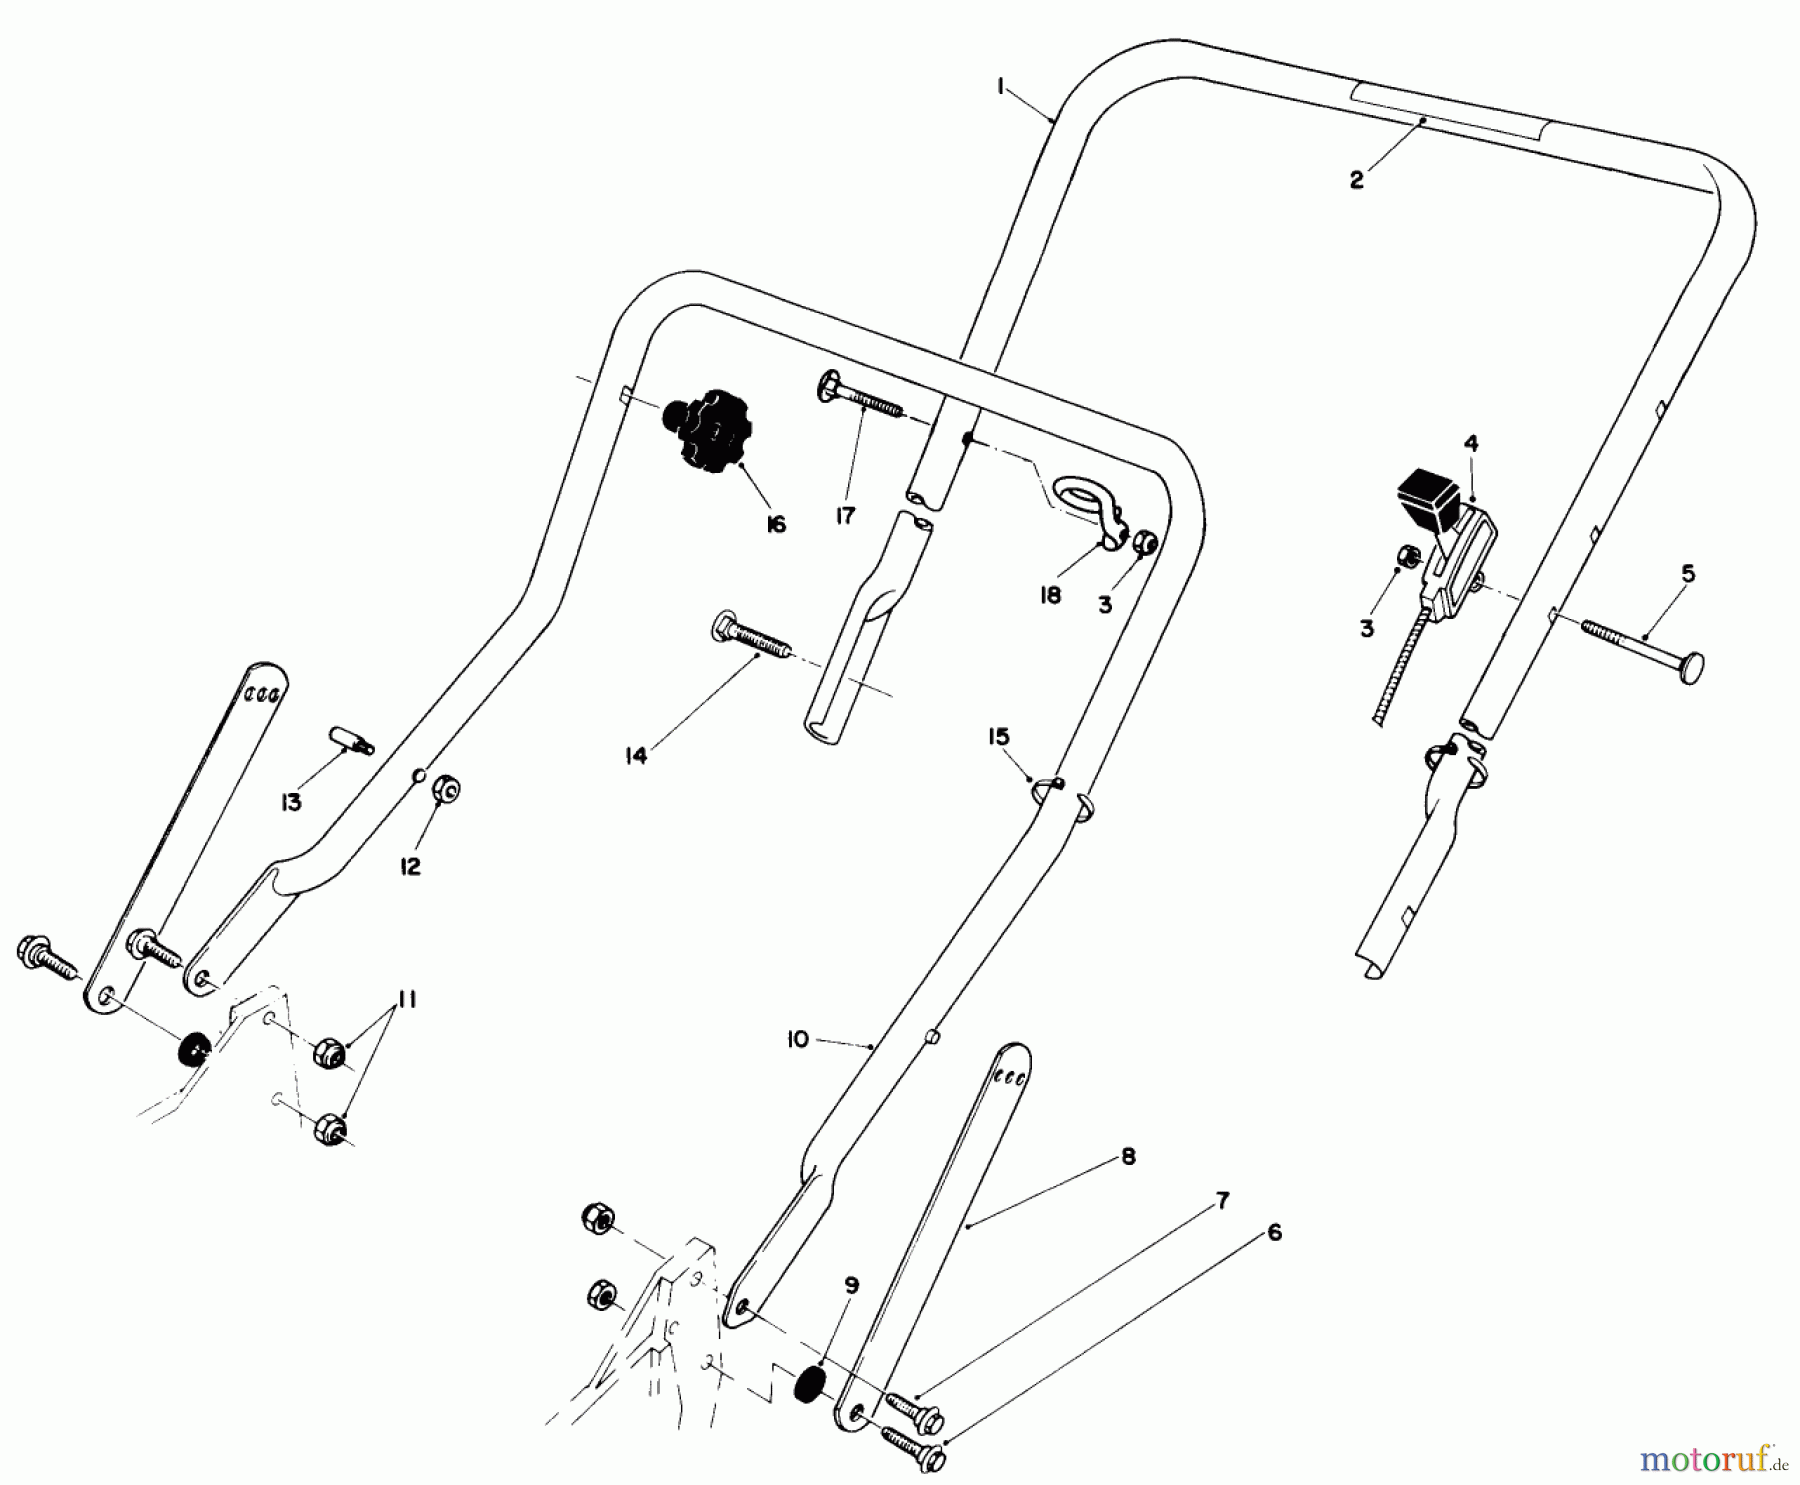  Toro Neu Mowers, Walk-Behind Seite 1 20561 - Toro Lawnmower, 1990 (0000001-0999999) HANDLE ASSEMBLY